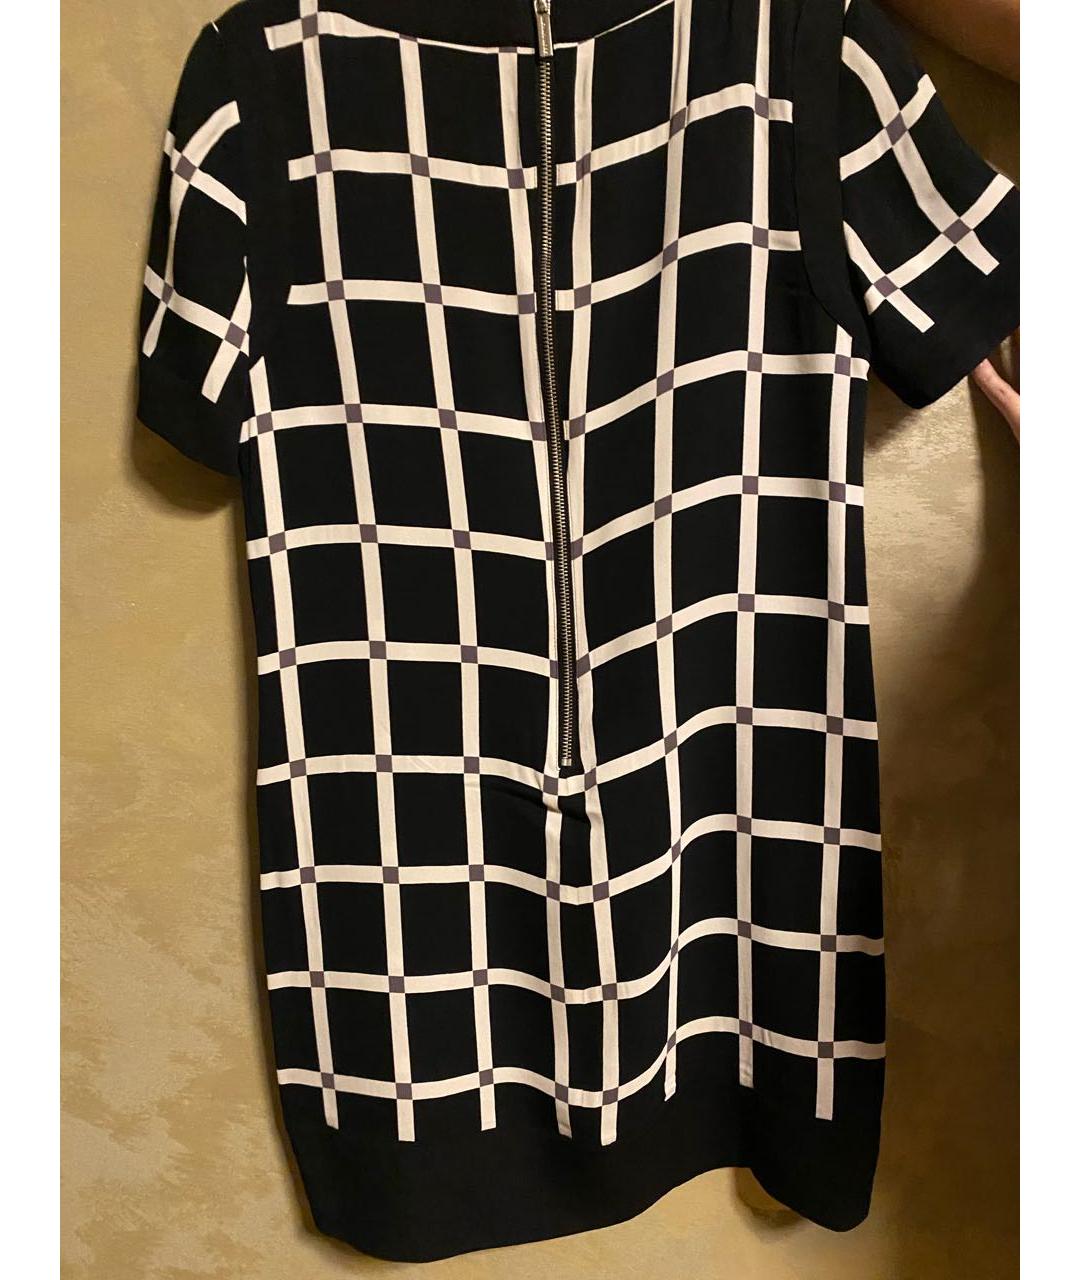 MICHAEL KORS Черное вискозное повседневное платье, фото 2